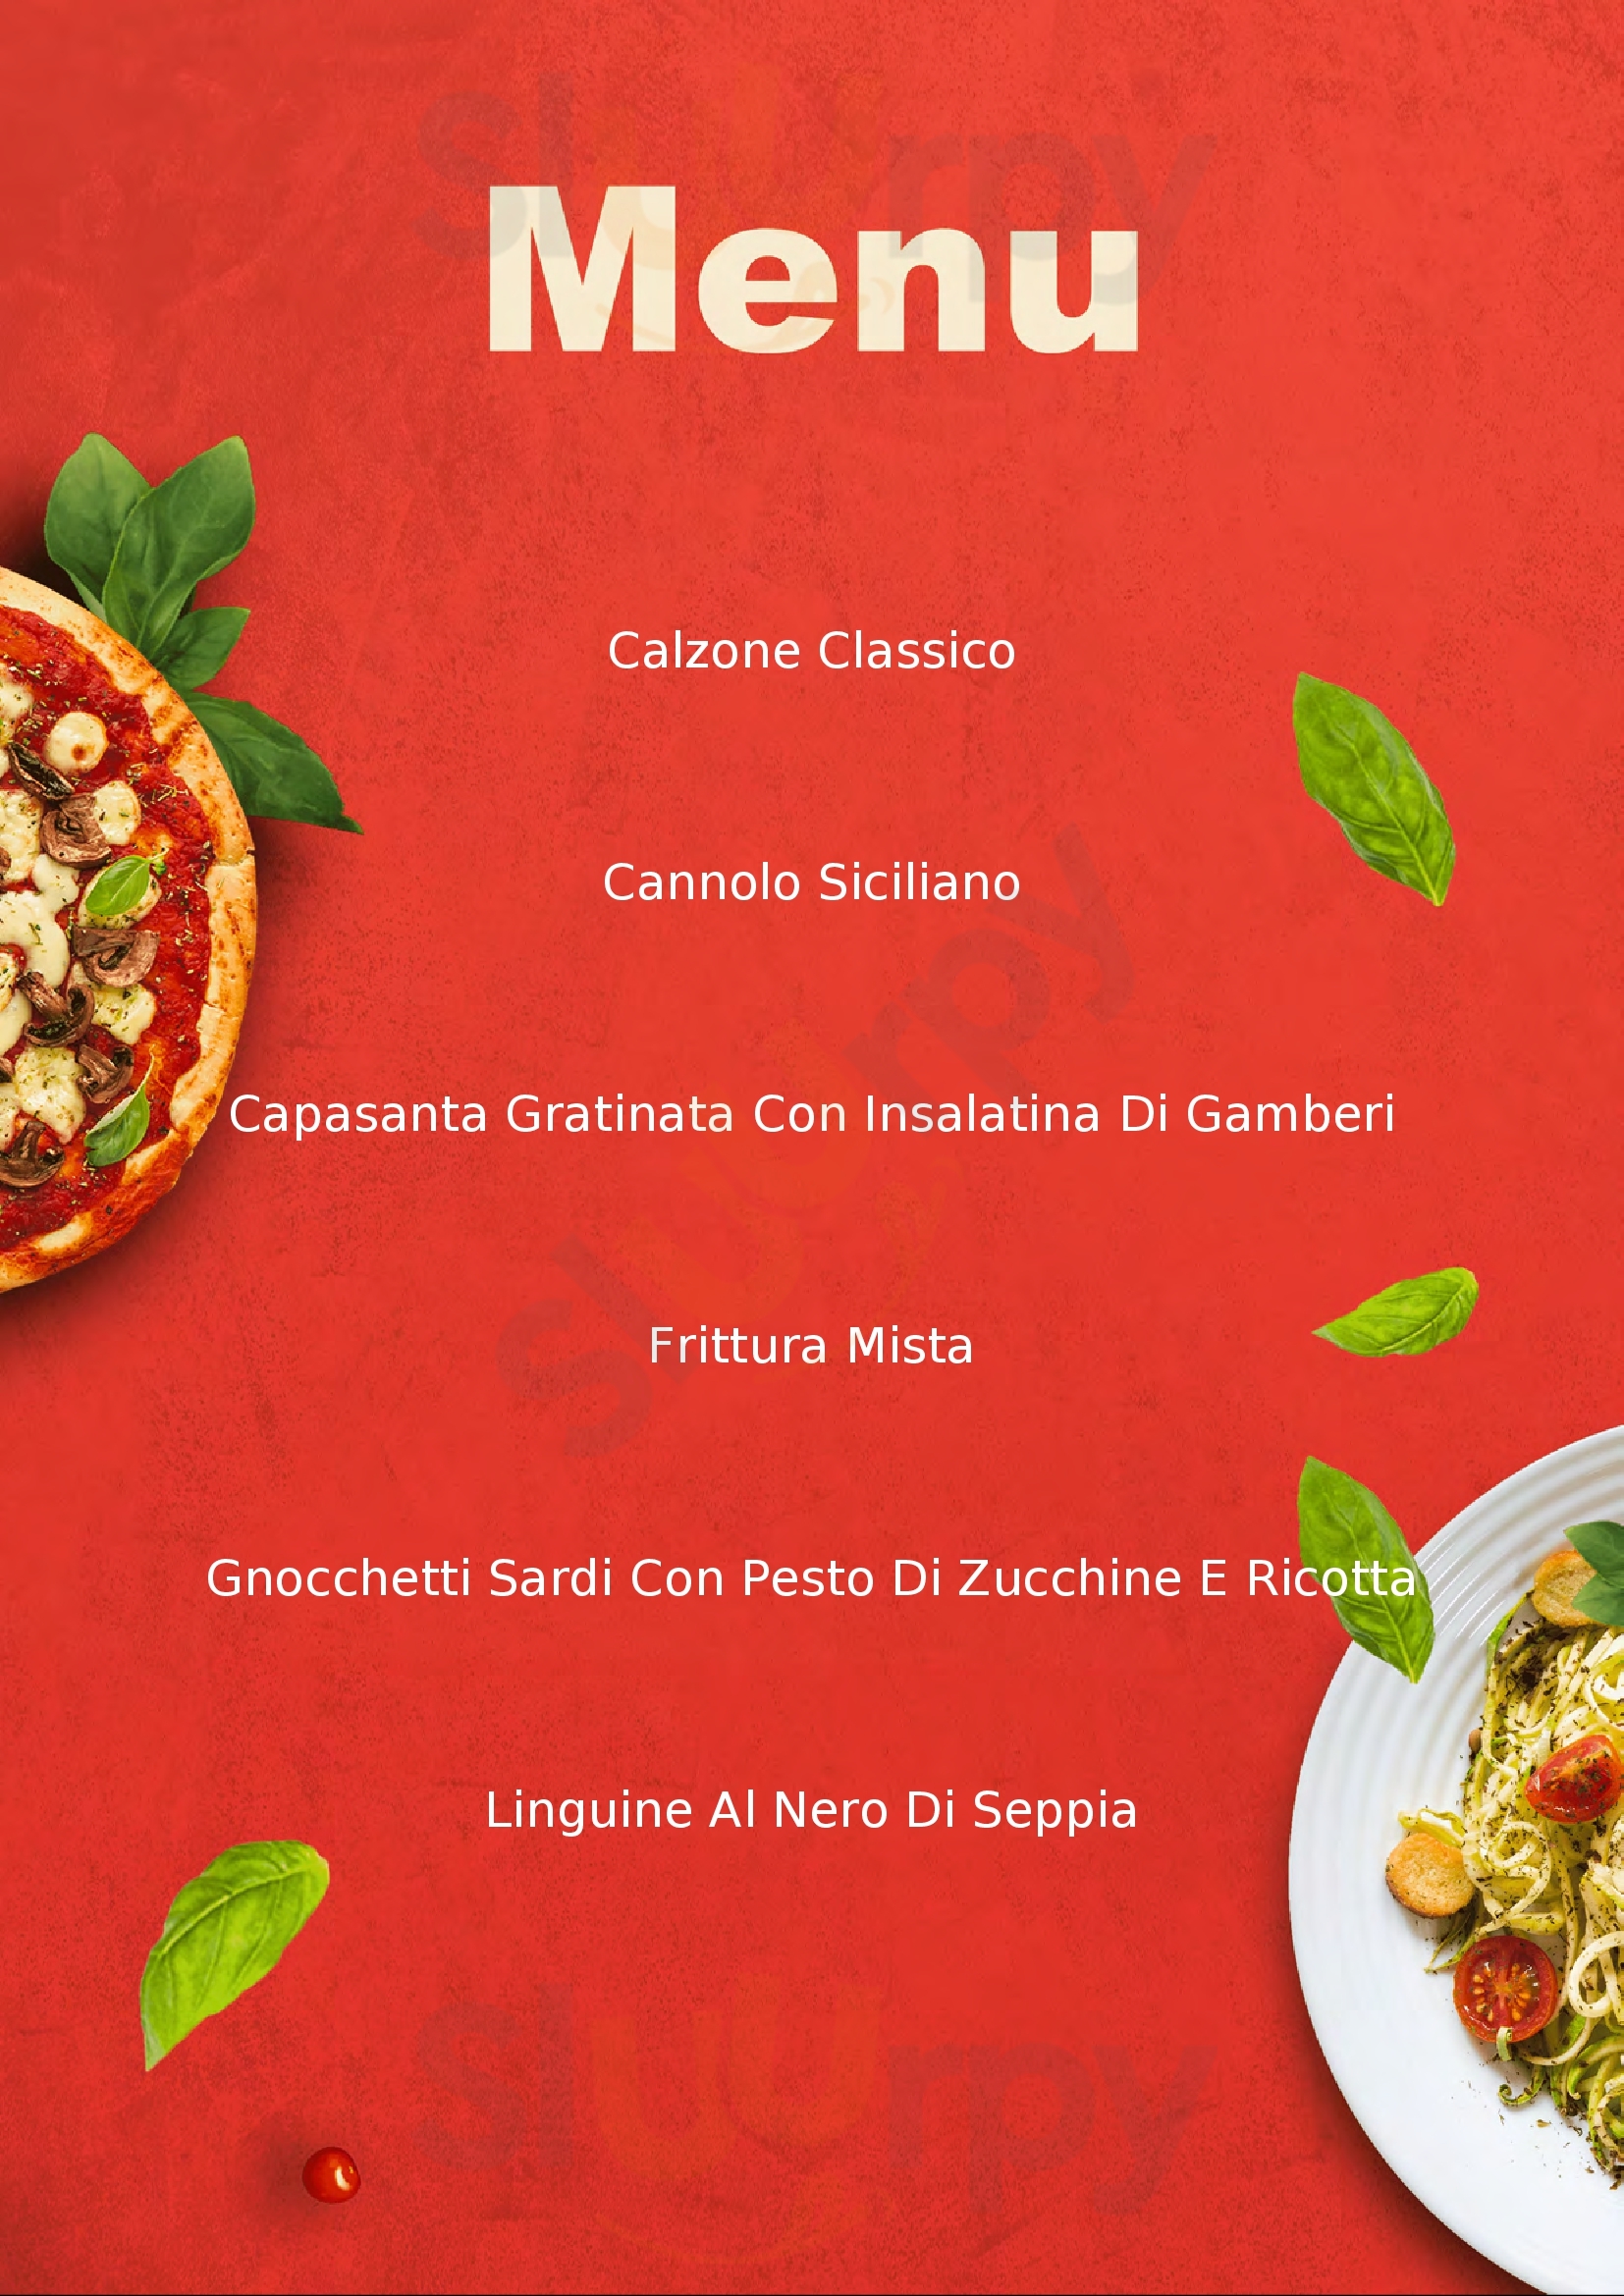 Mazzarino Pizzeria Restaurant Taormina menù 1 pagina